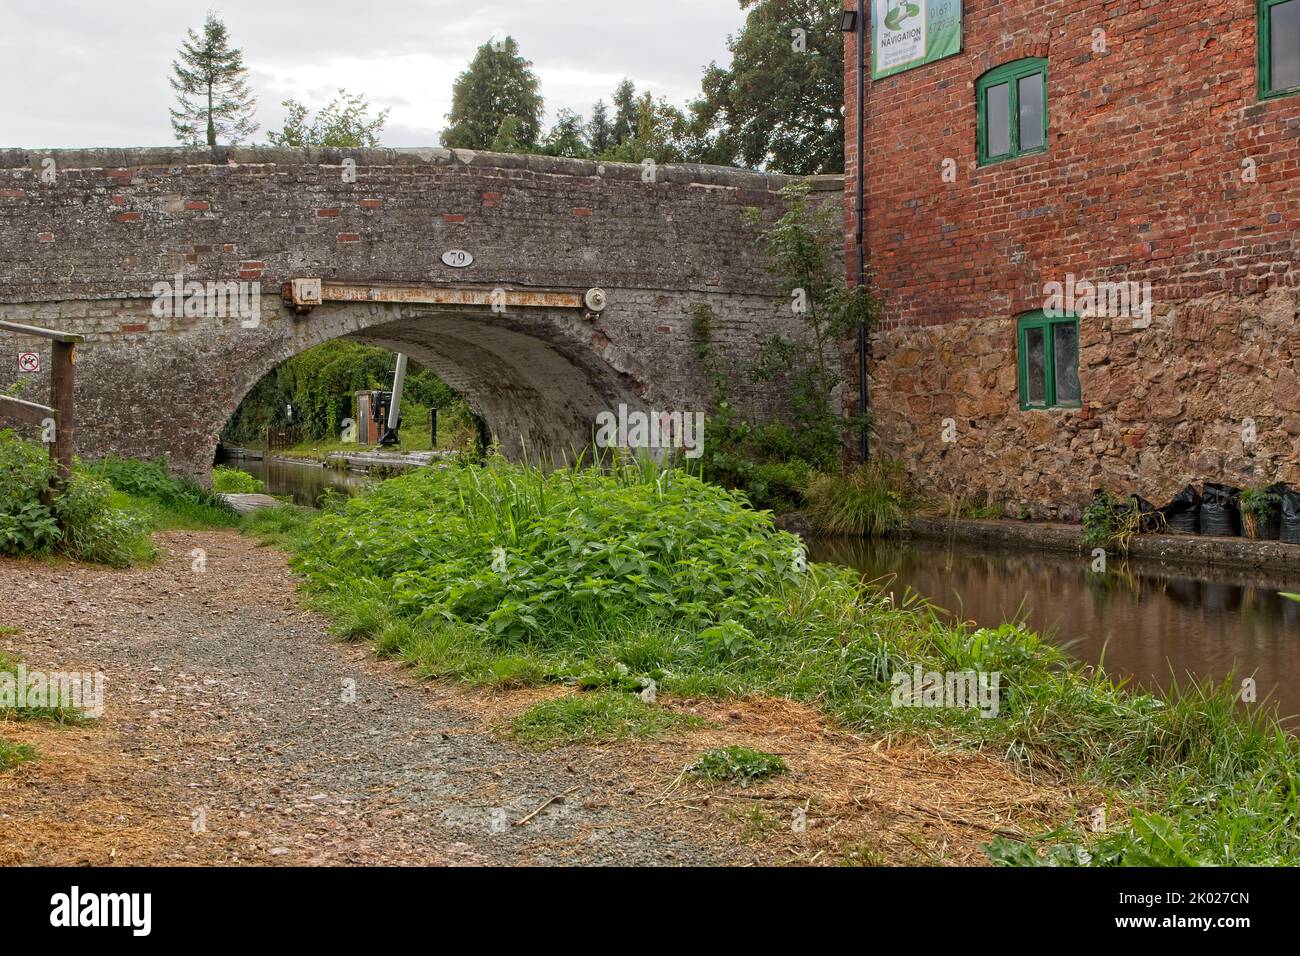 Un vieux pont traverse le canal Montgomery à Maesbury Marsh, dans la campagne du Shropshire, en Angleterre. Banque D'Images